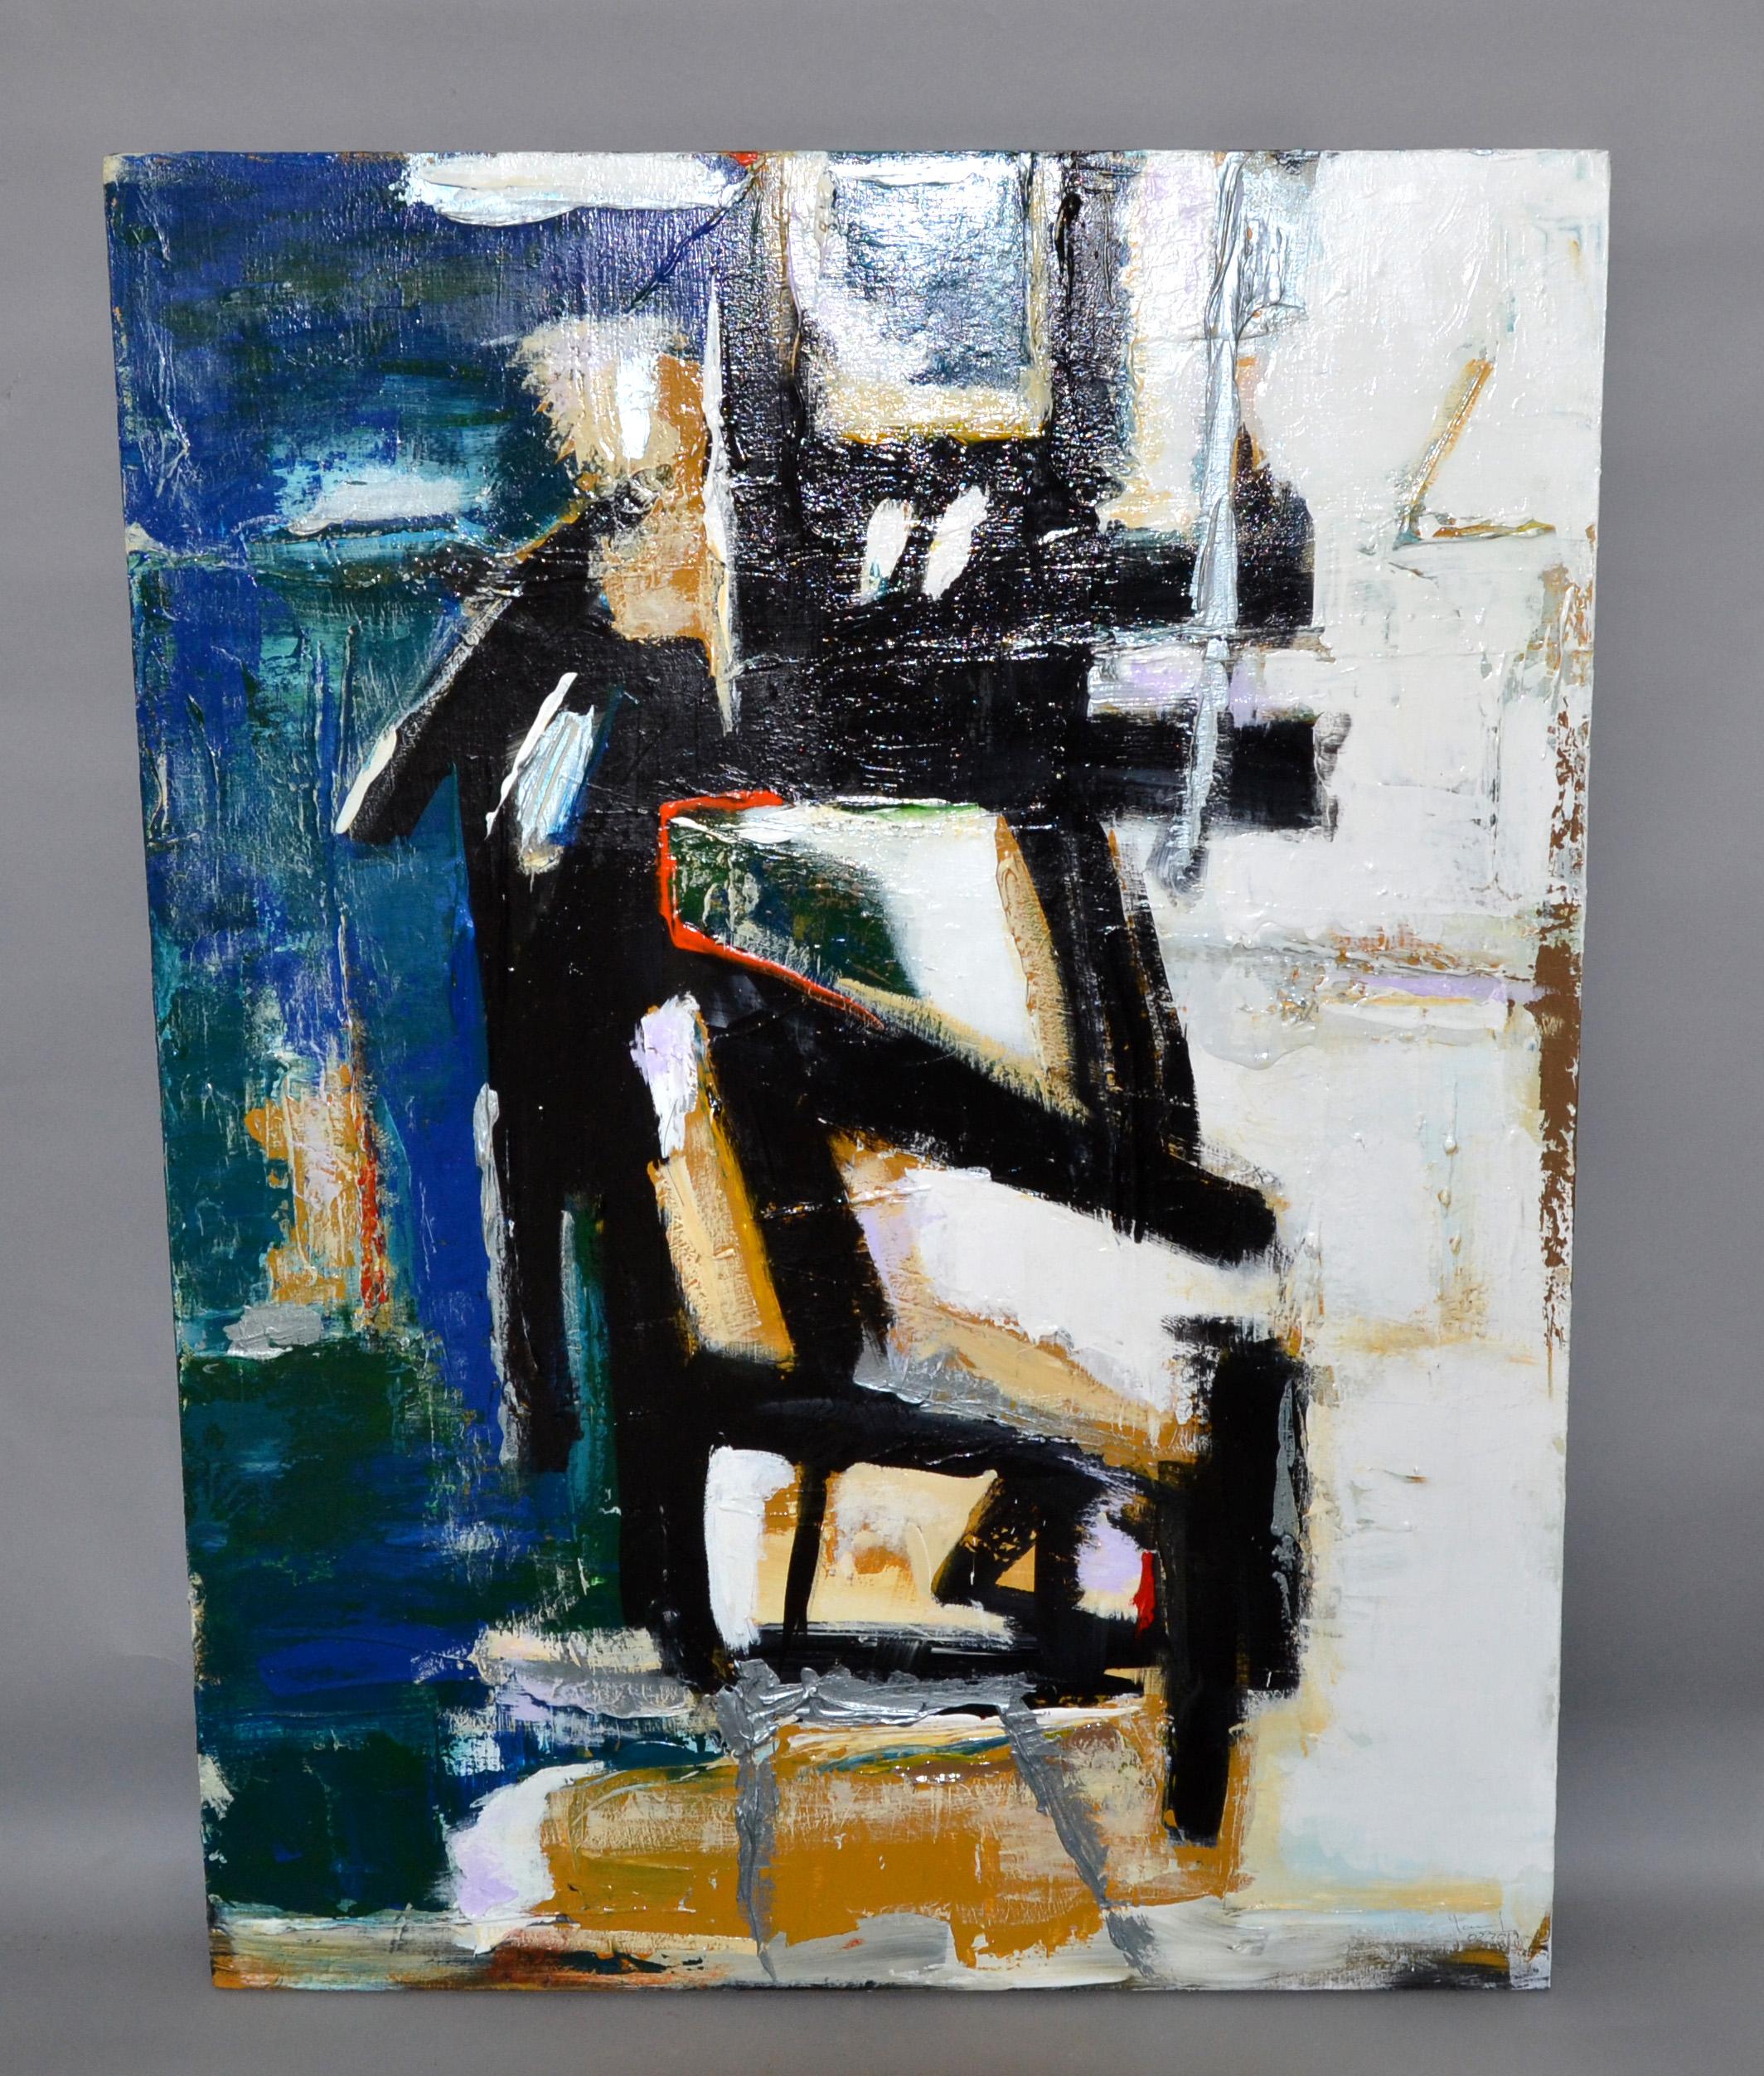 Peinture abstraite multicolore de Yamil O. Cardenas peinture abstraite en acrylique sur toile.
Signé et daté, 02/2019 dans le coin avant droit.
Yamil O. Cardenas est né à Cuba en 1972 et a récemment déménagé à Miami, aux États-Unis.
En